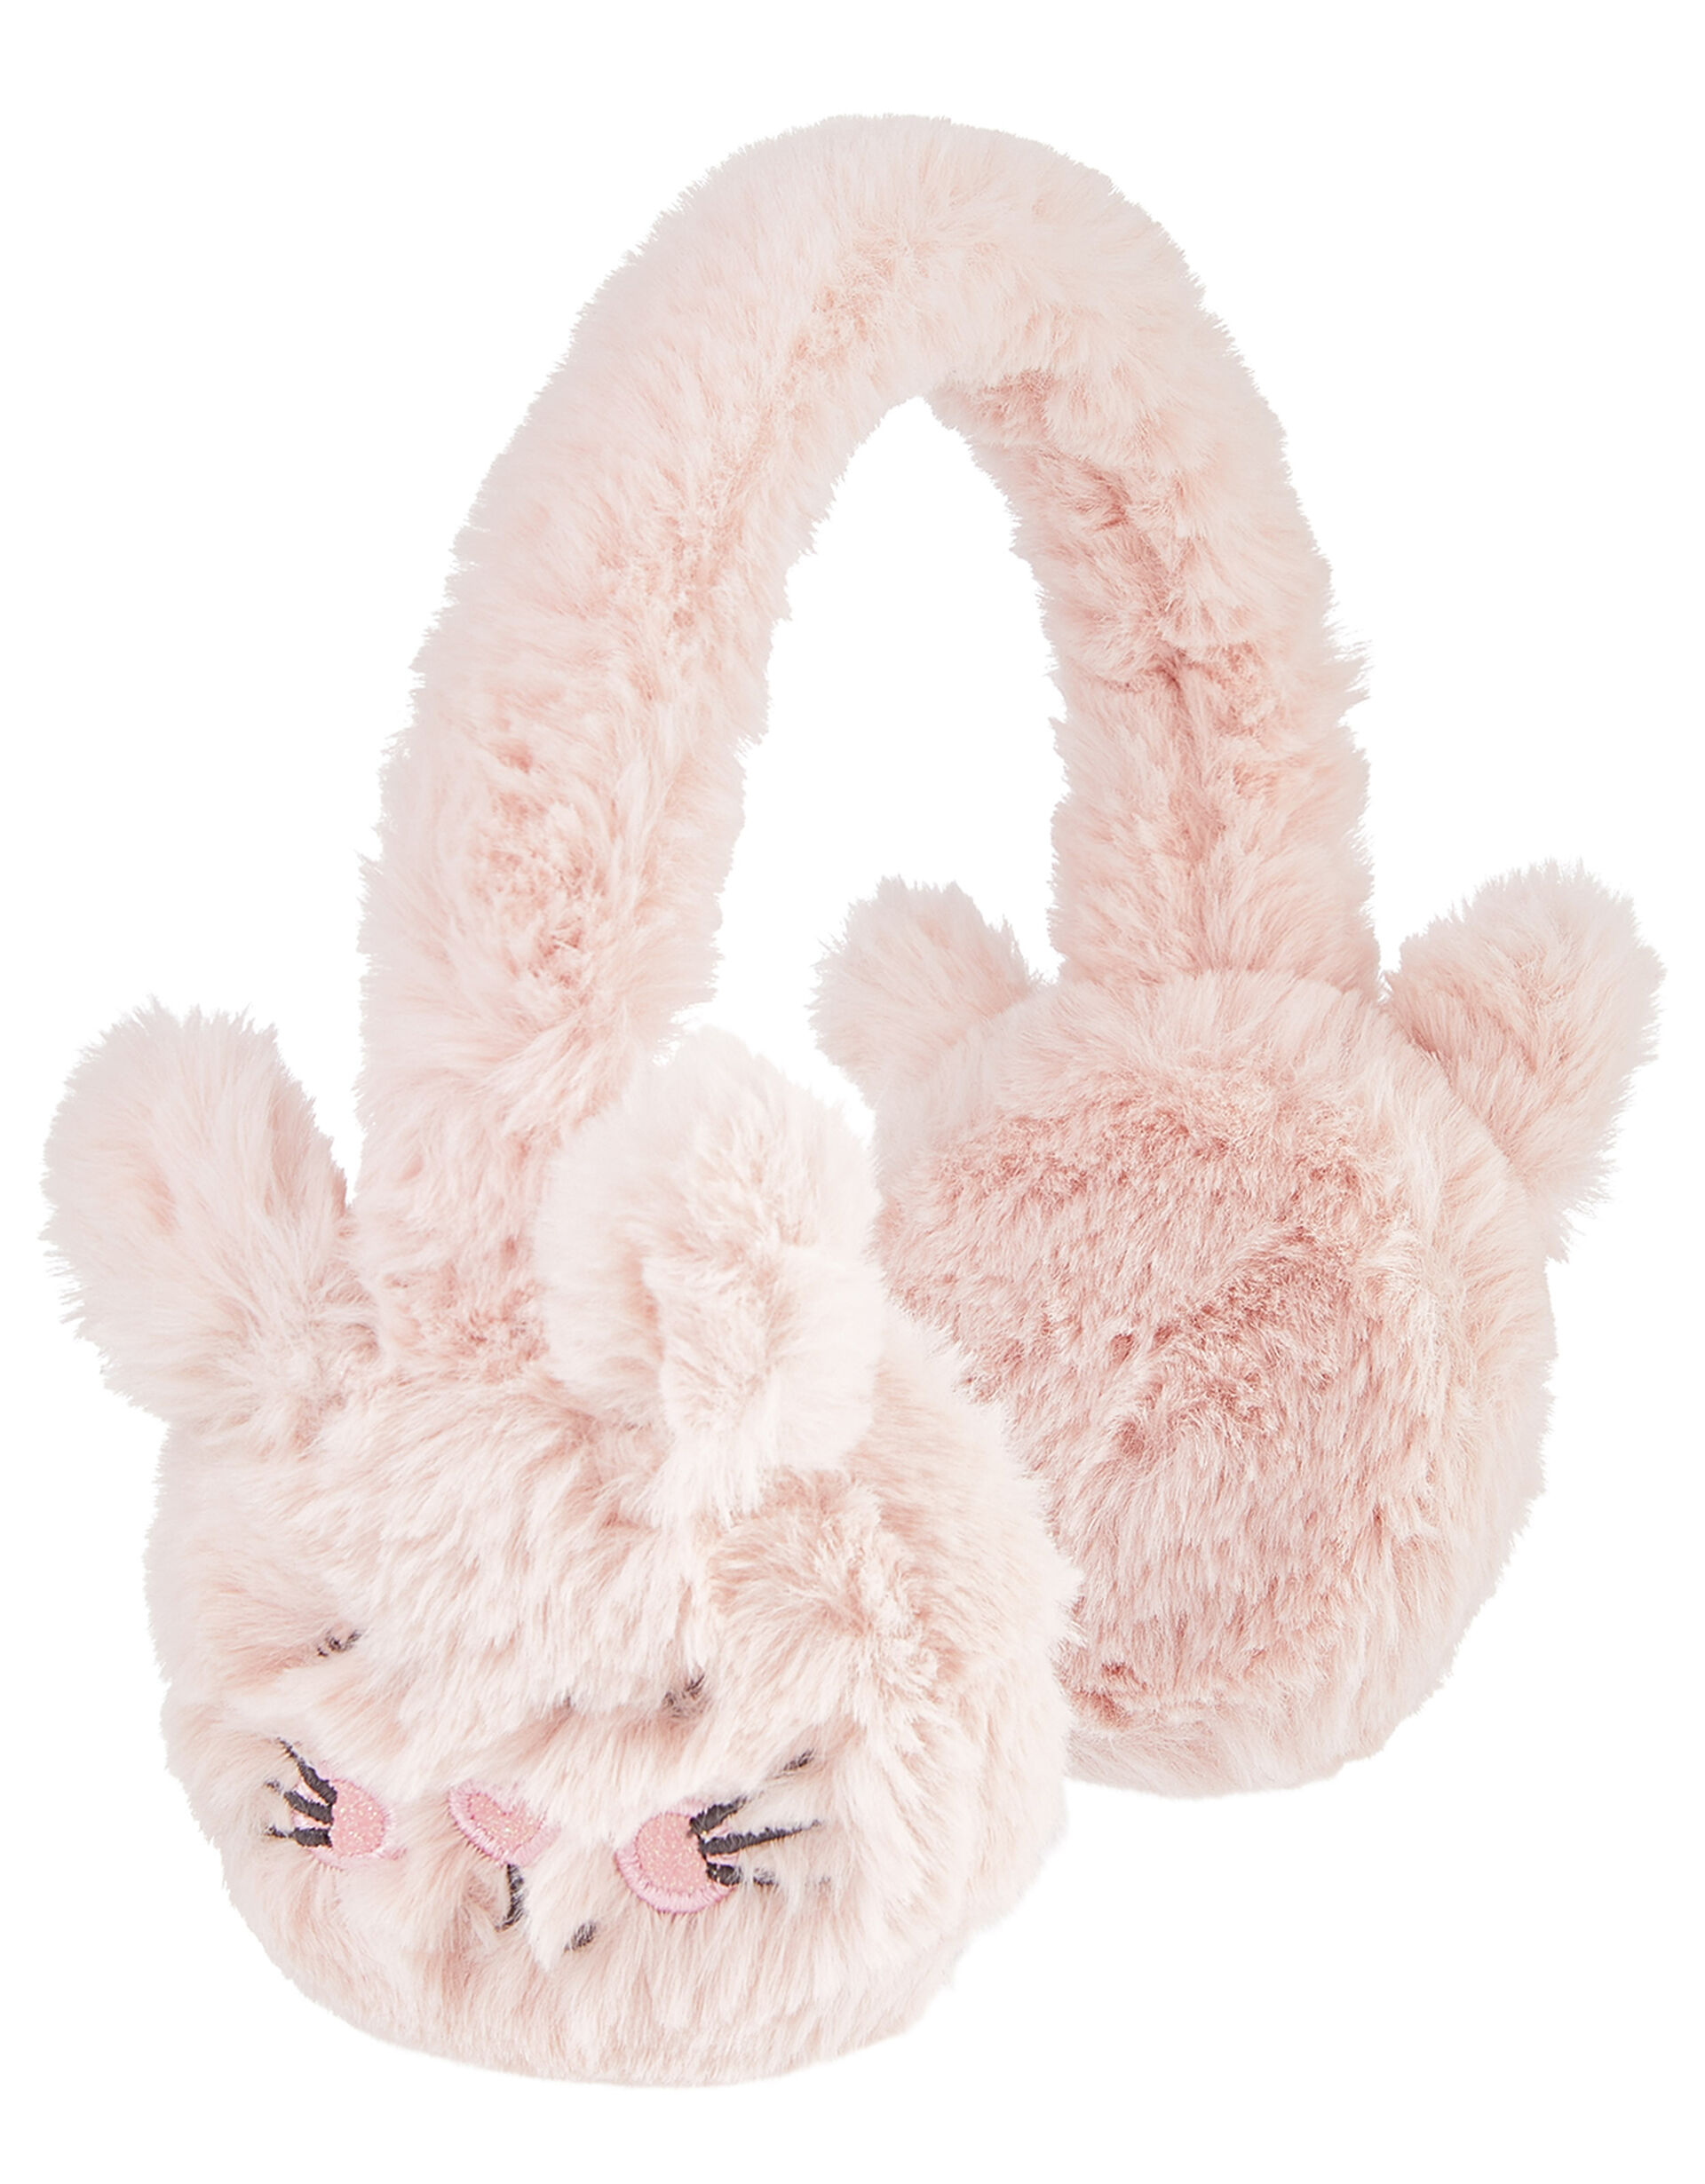 Bella Bunny Fluffy Earmuffs, , large